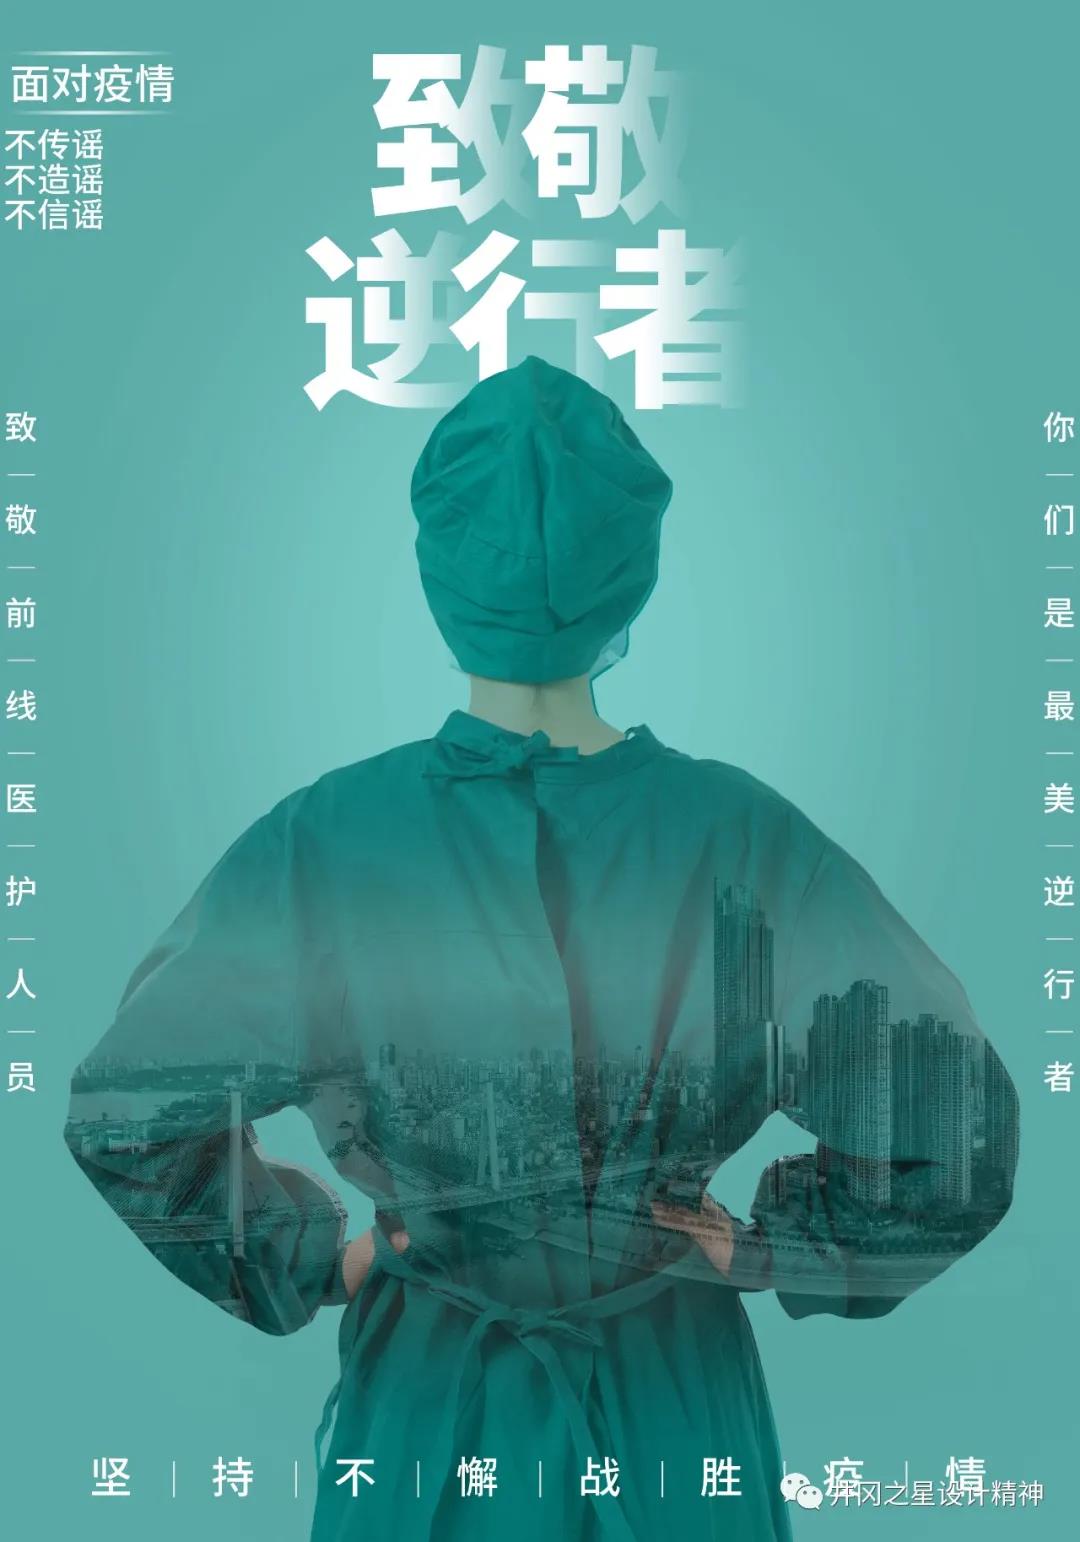 《致敬前线医护人员》-吴俊平 -江西师范大学美术学院